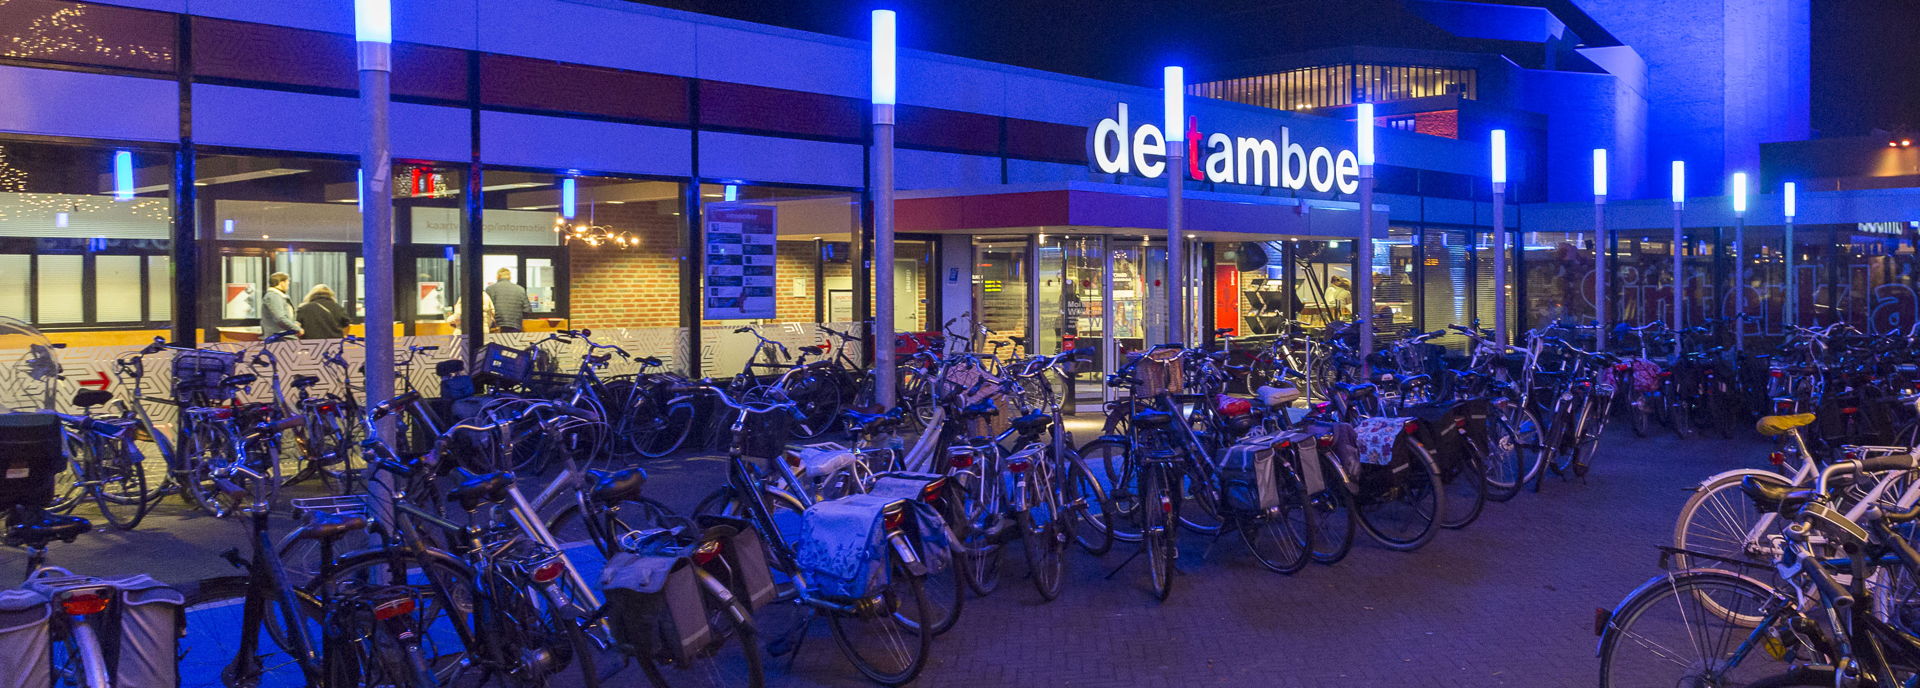 Tijdens het Bluesfestival staat het plein voor De Tamboer vol met fietsen. 